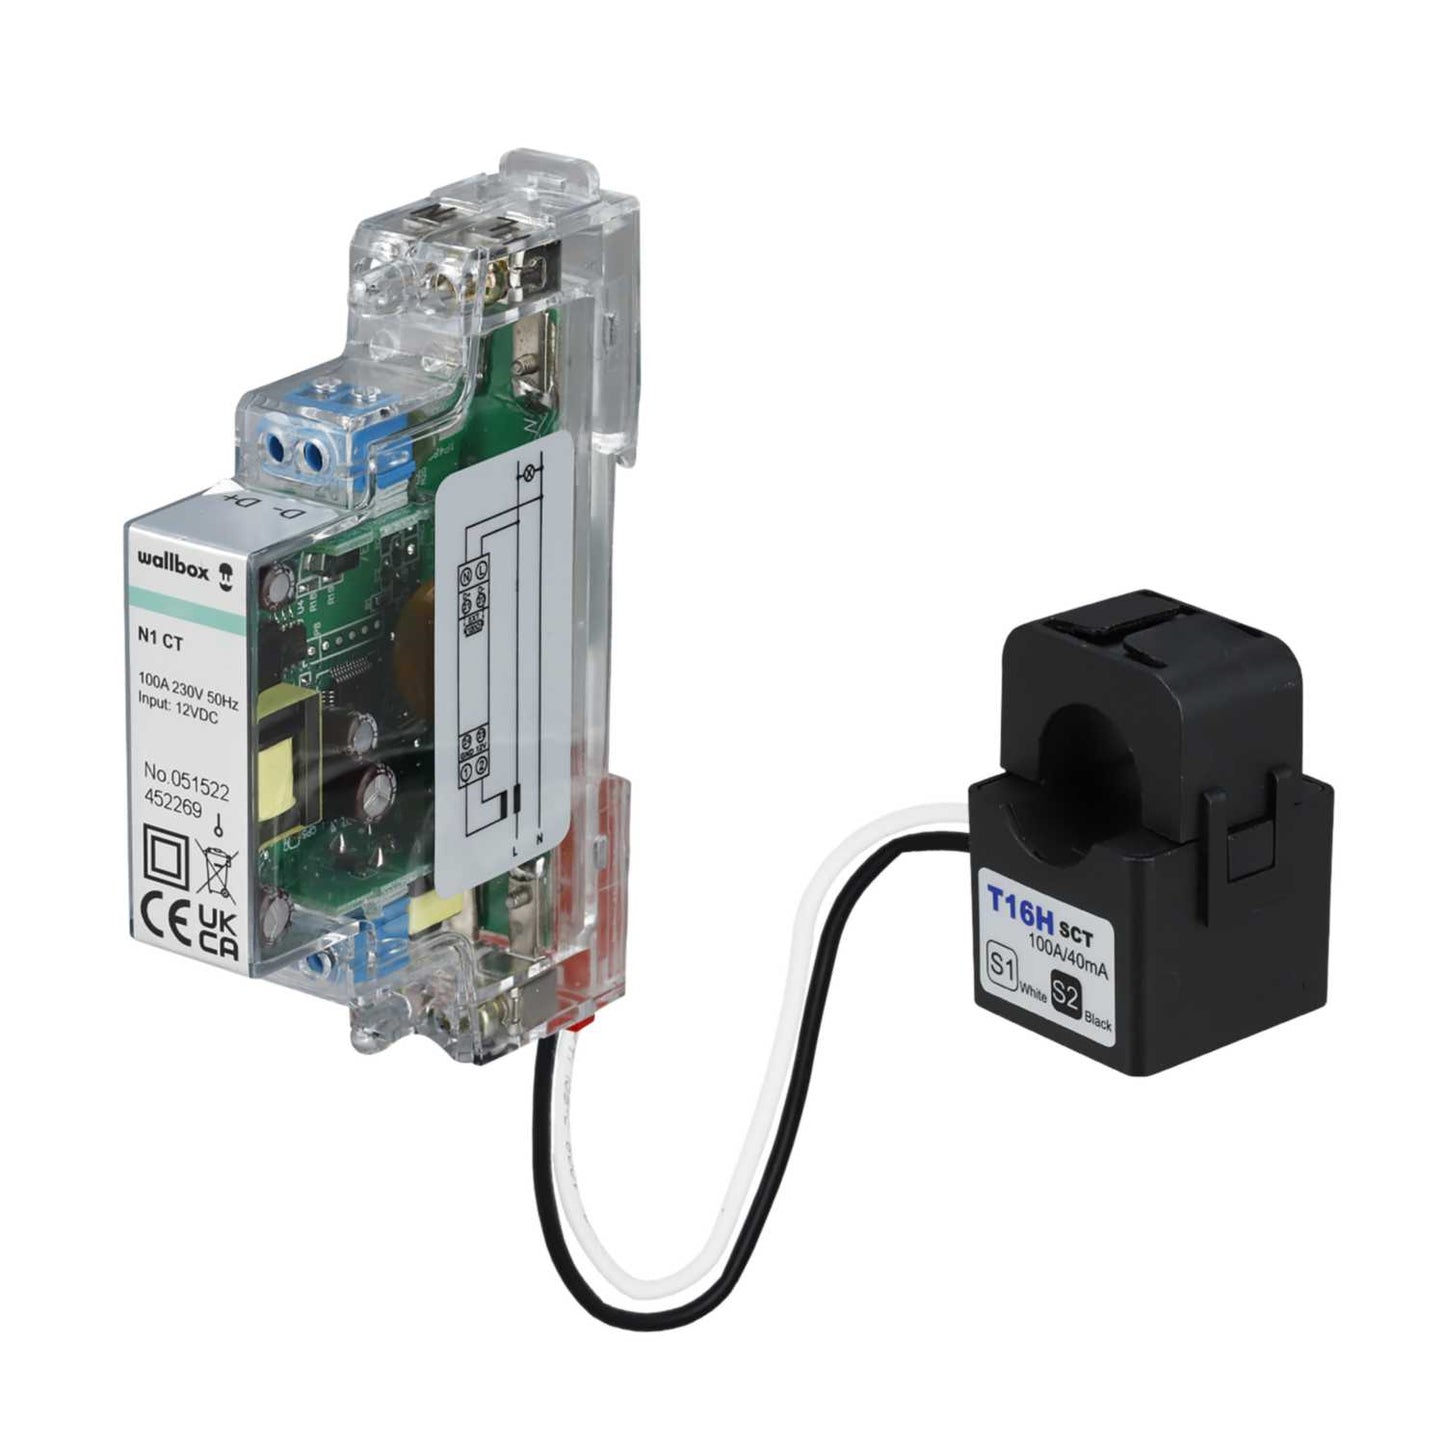 Sensor para Control Dinámico de Potencia Wallbox Power Boost Monofásico Medición Indirecta hasta 80A 